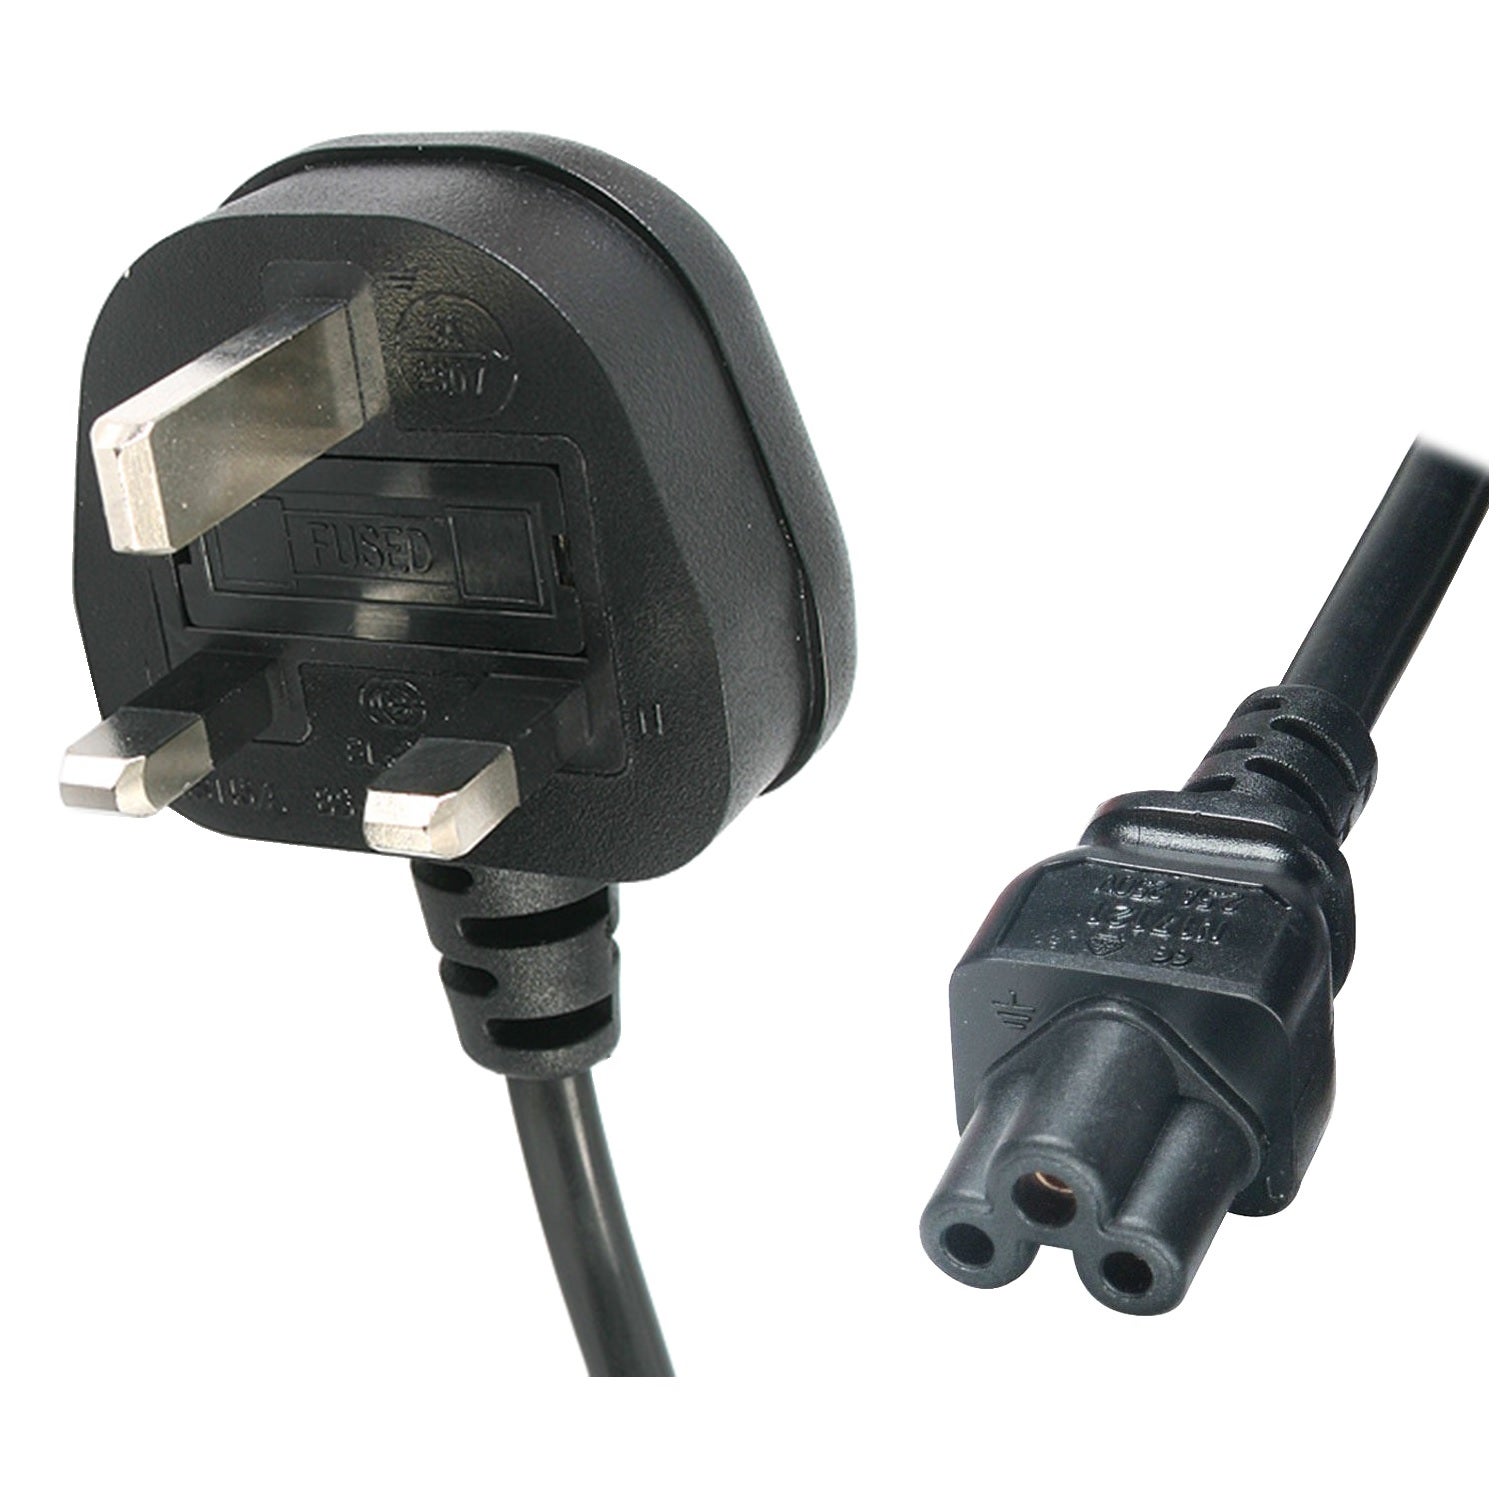 UK 3 Pin Plug to IEC C5 Image